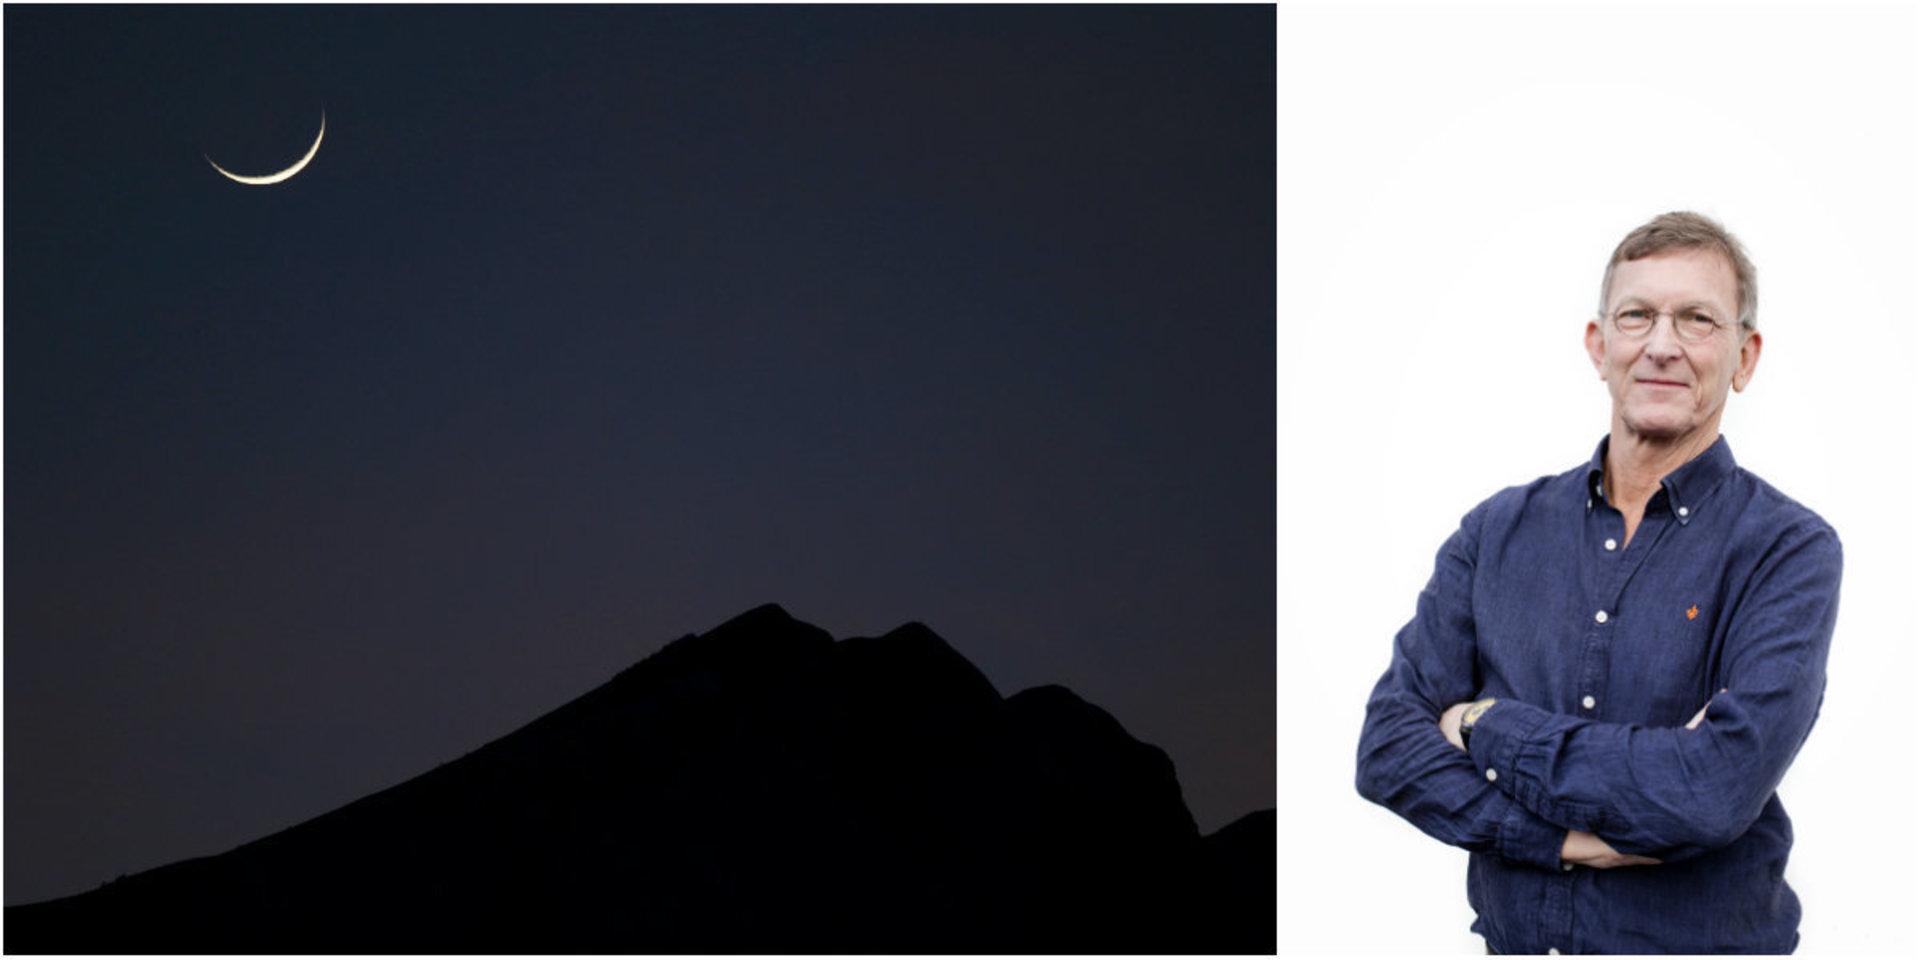 Helgkrönikören Tomas Sjödin blev i veckan upprymd av en vetenskapsnyhet – om mörker.